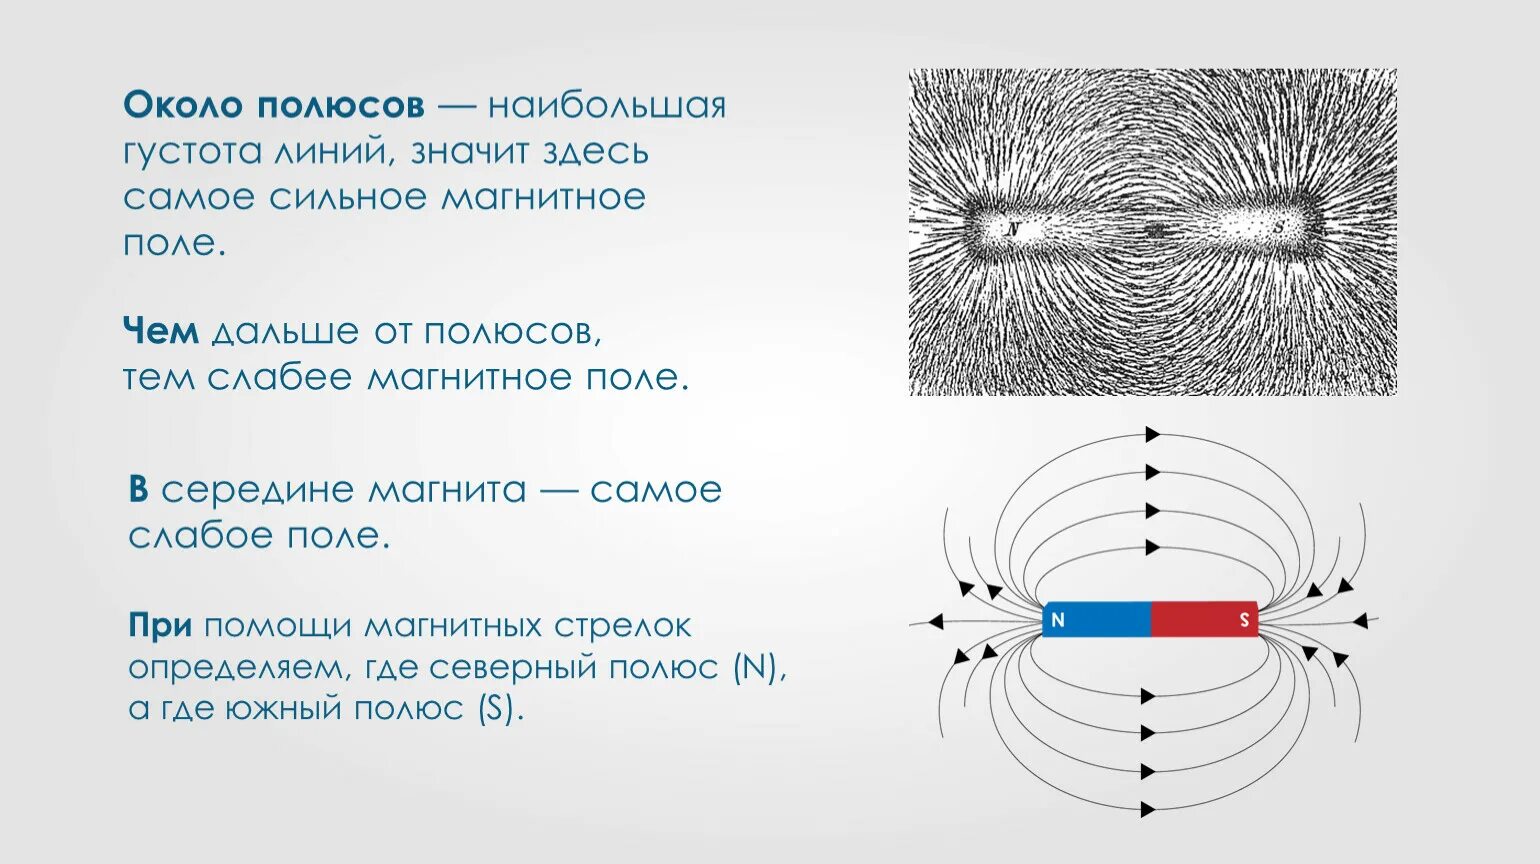 Картинки магнитных линий магнитного поля. Силовые линии магнитного поля полосового магнита. Схема магнитного поля постоянного магнита. Картина магнитного поля постоянного полосового магнита. Магнитные линии постоянного дугообразного магнита.